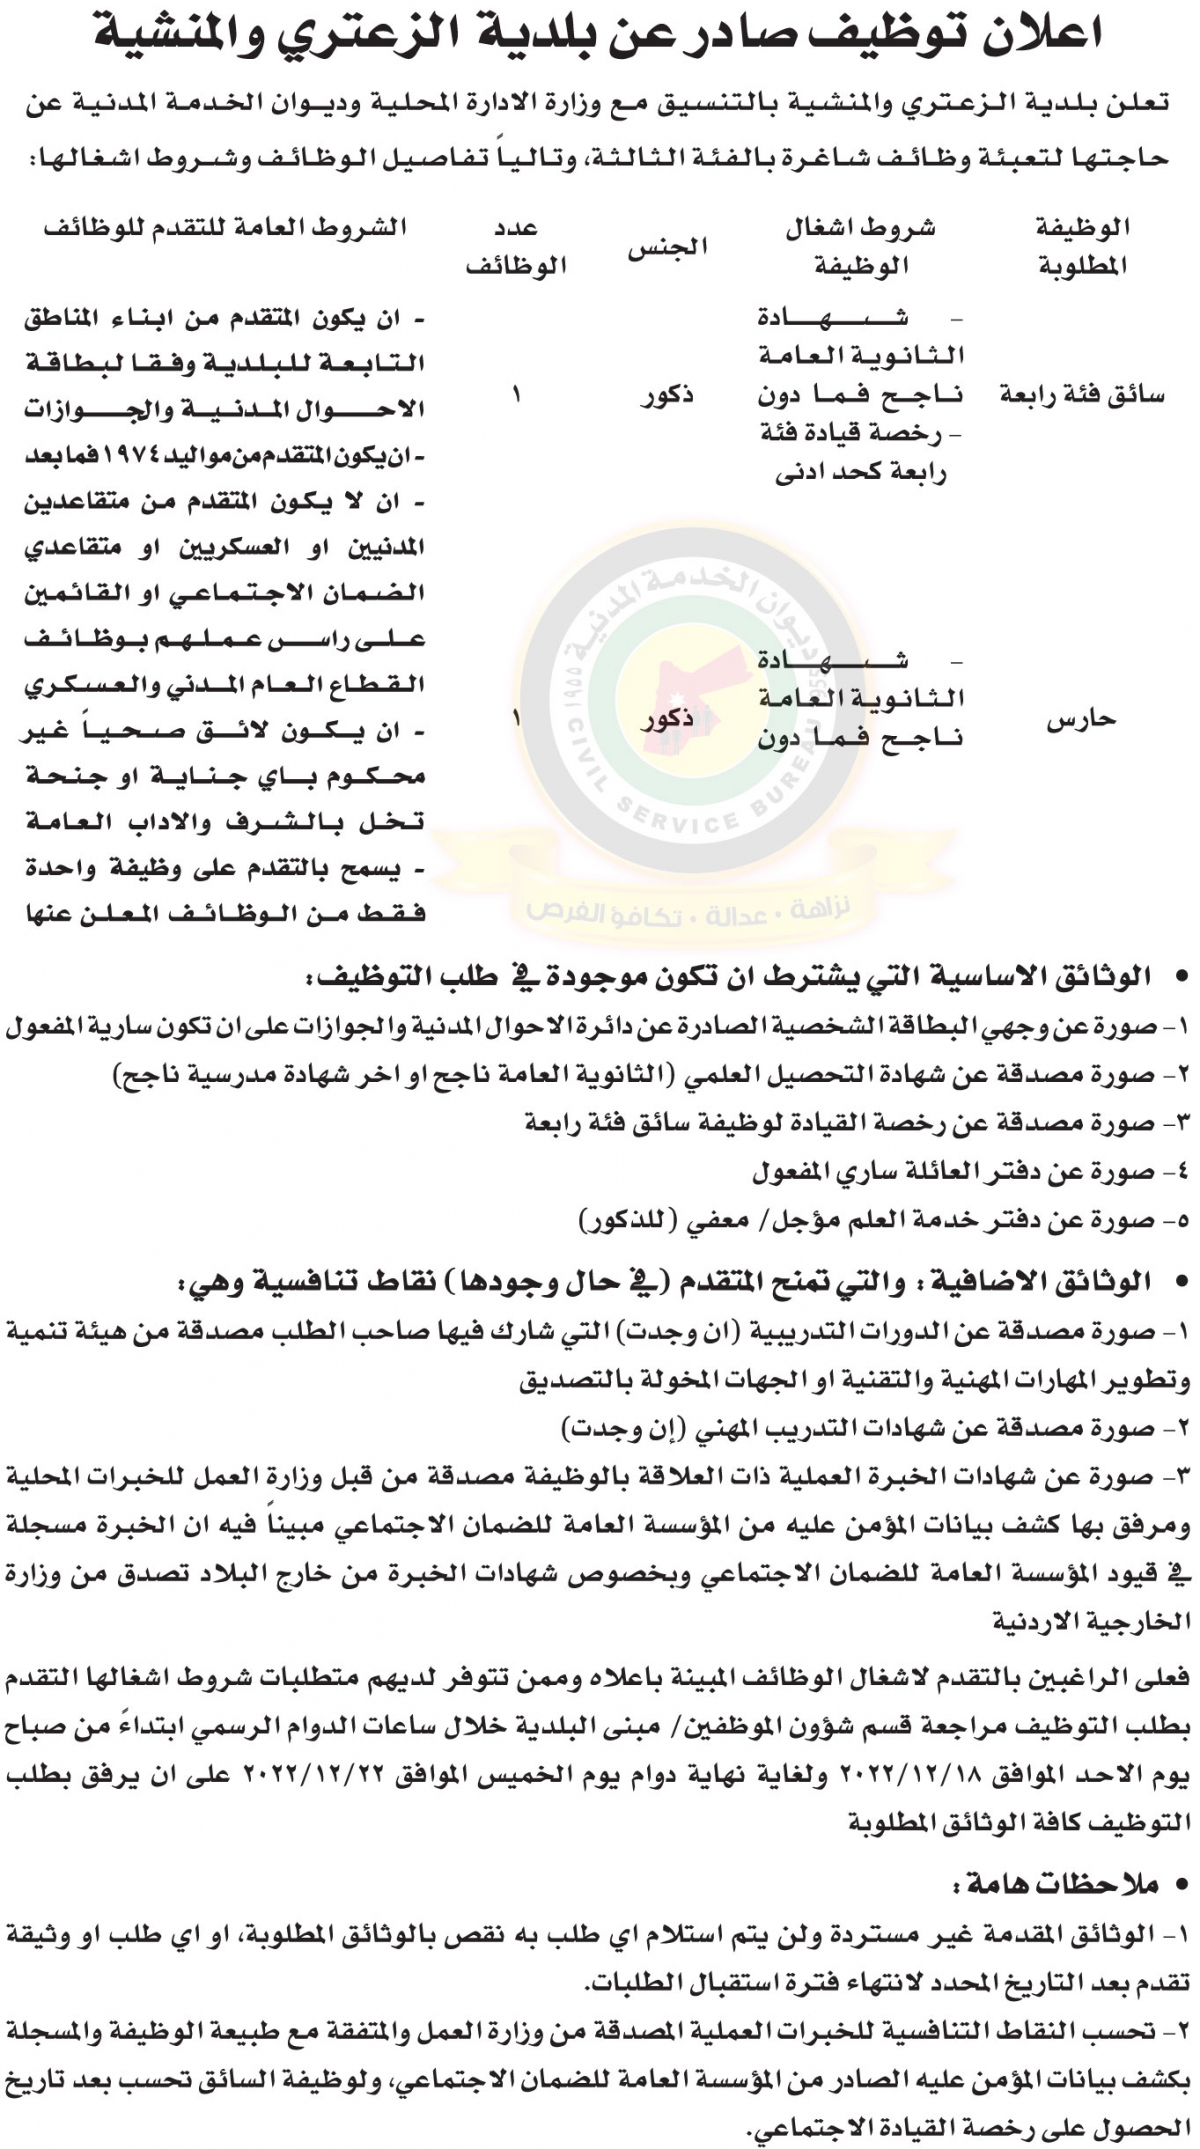 اعلان وظائف شاغرة بالفئة الثالثة صادر عن بلدية الزعتري والمنشية